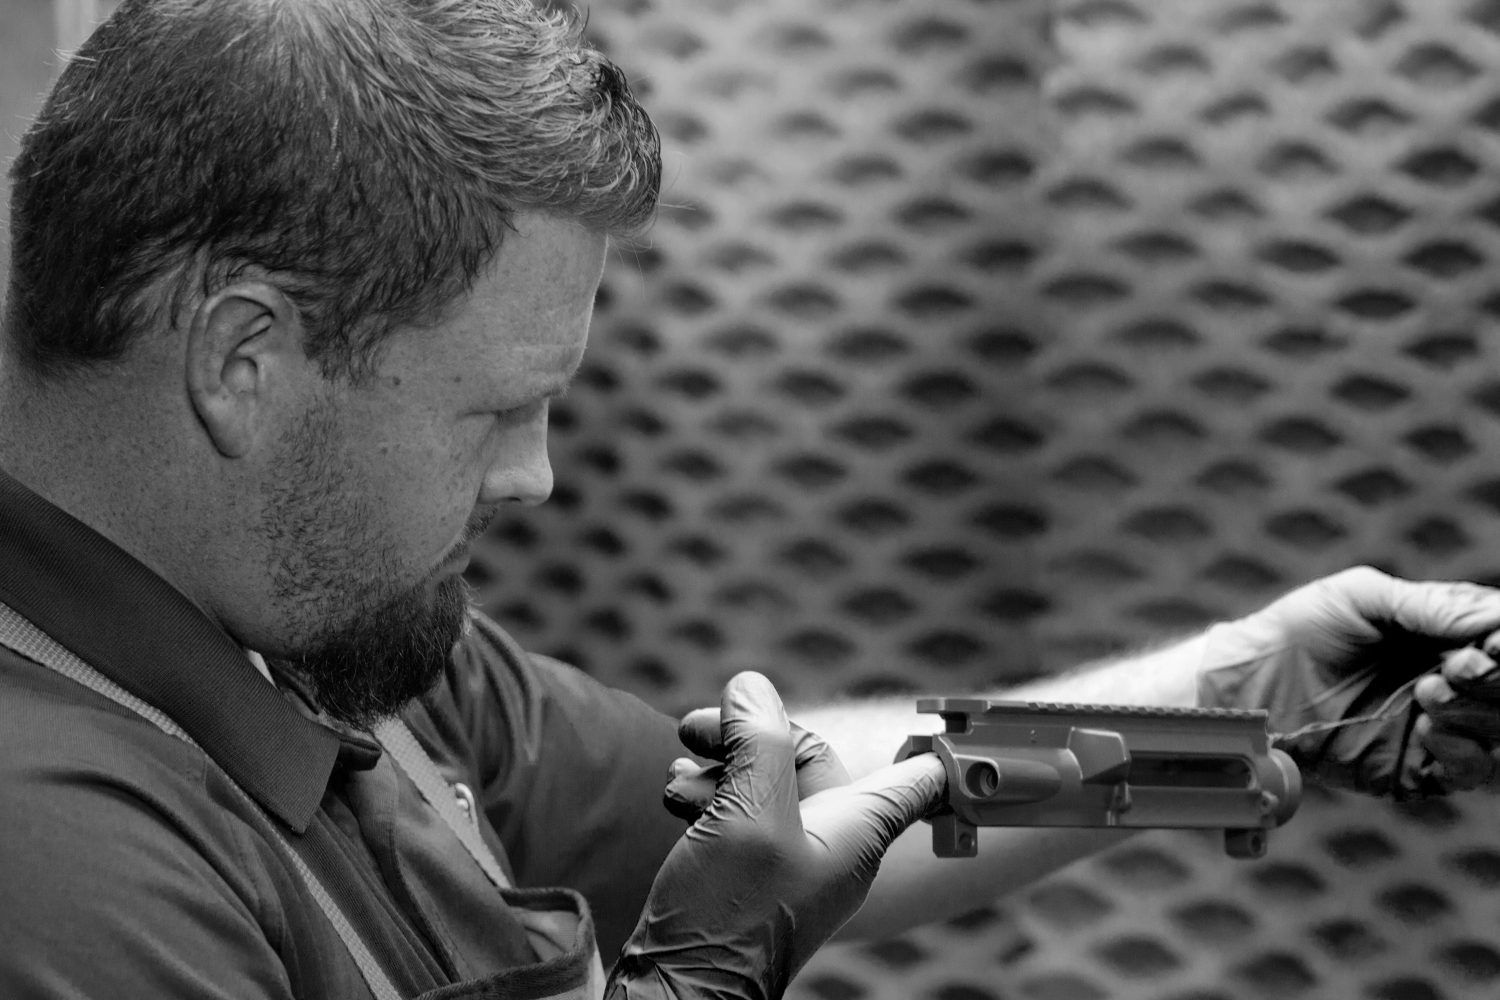 Gunsmith inspecting a gun